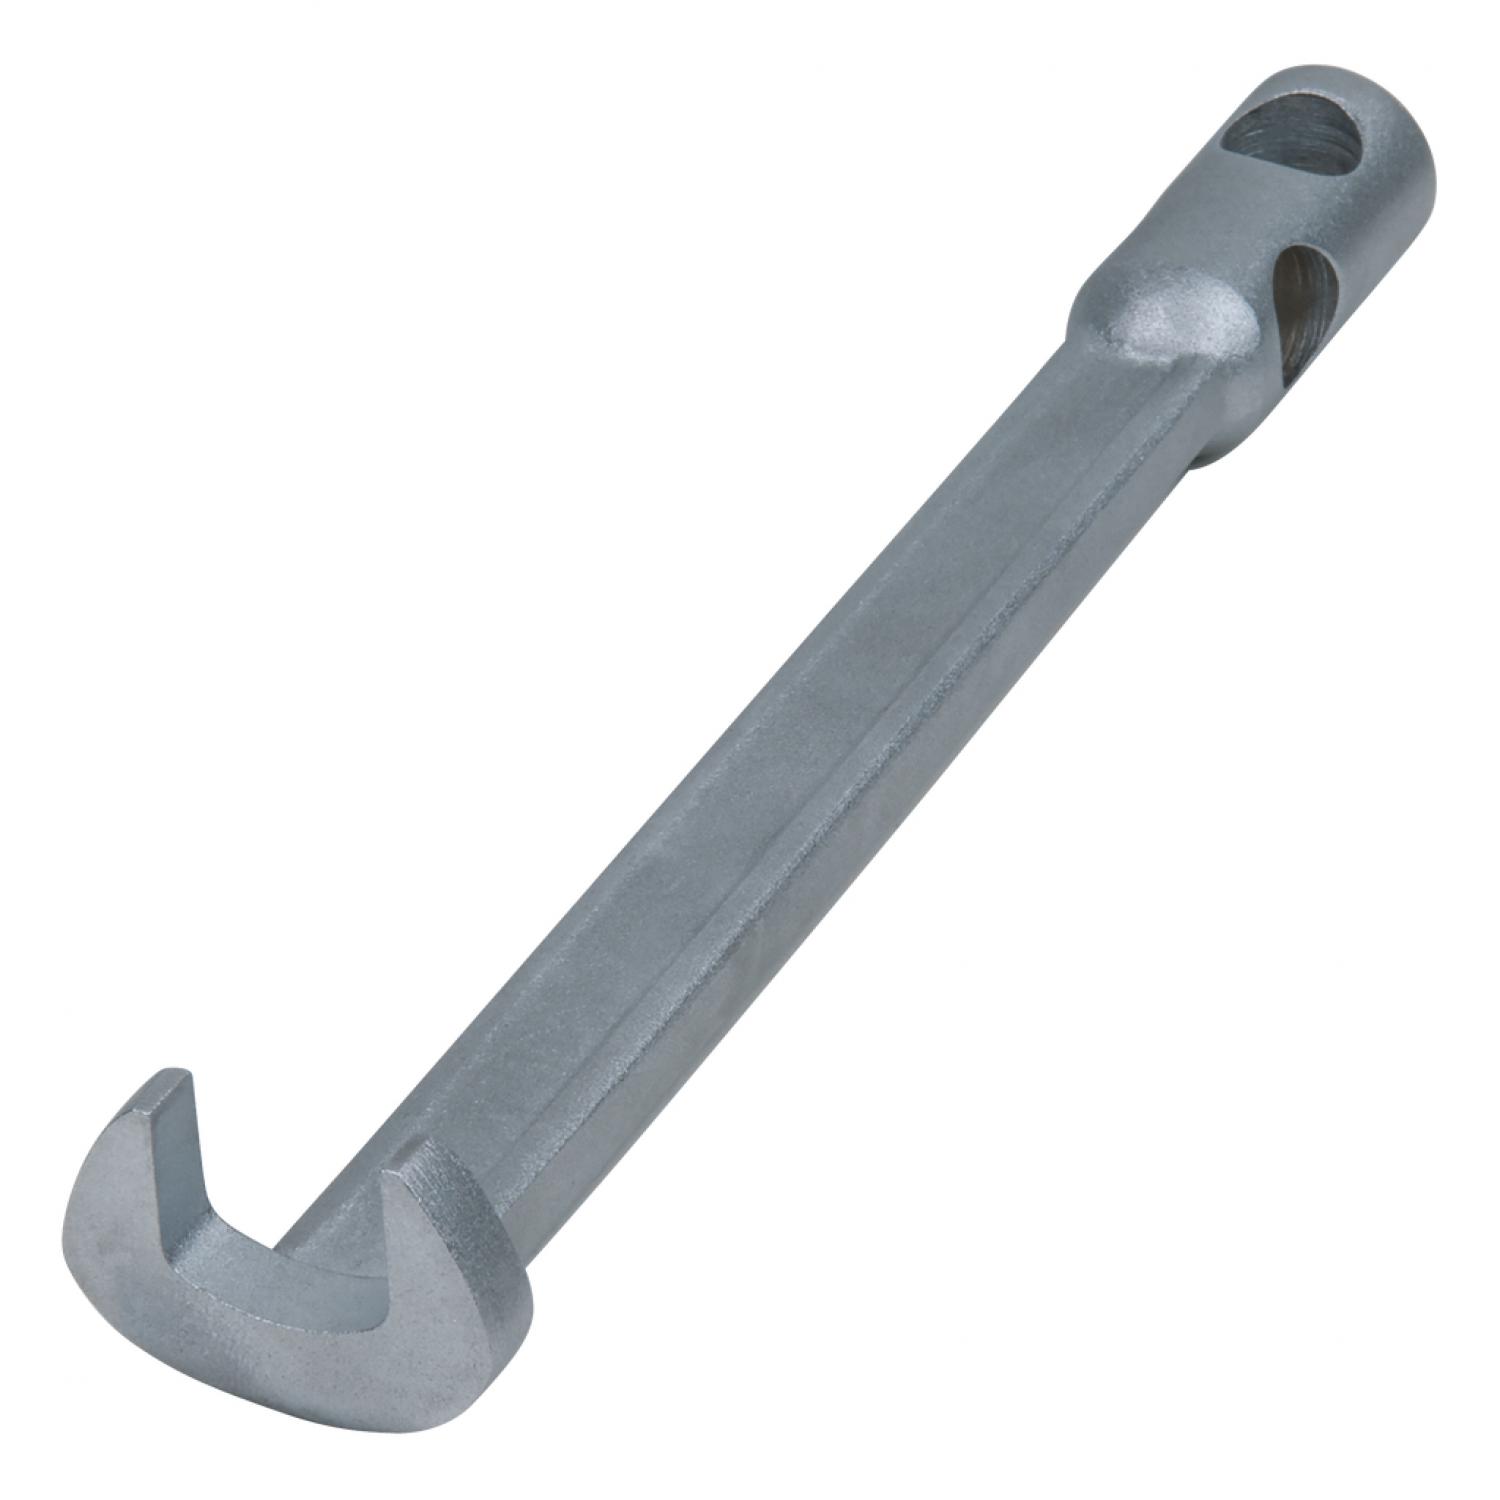 Гаечный ключ с открытым загнутым зевом без штифтовой ручки, 24 мм